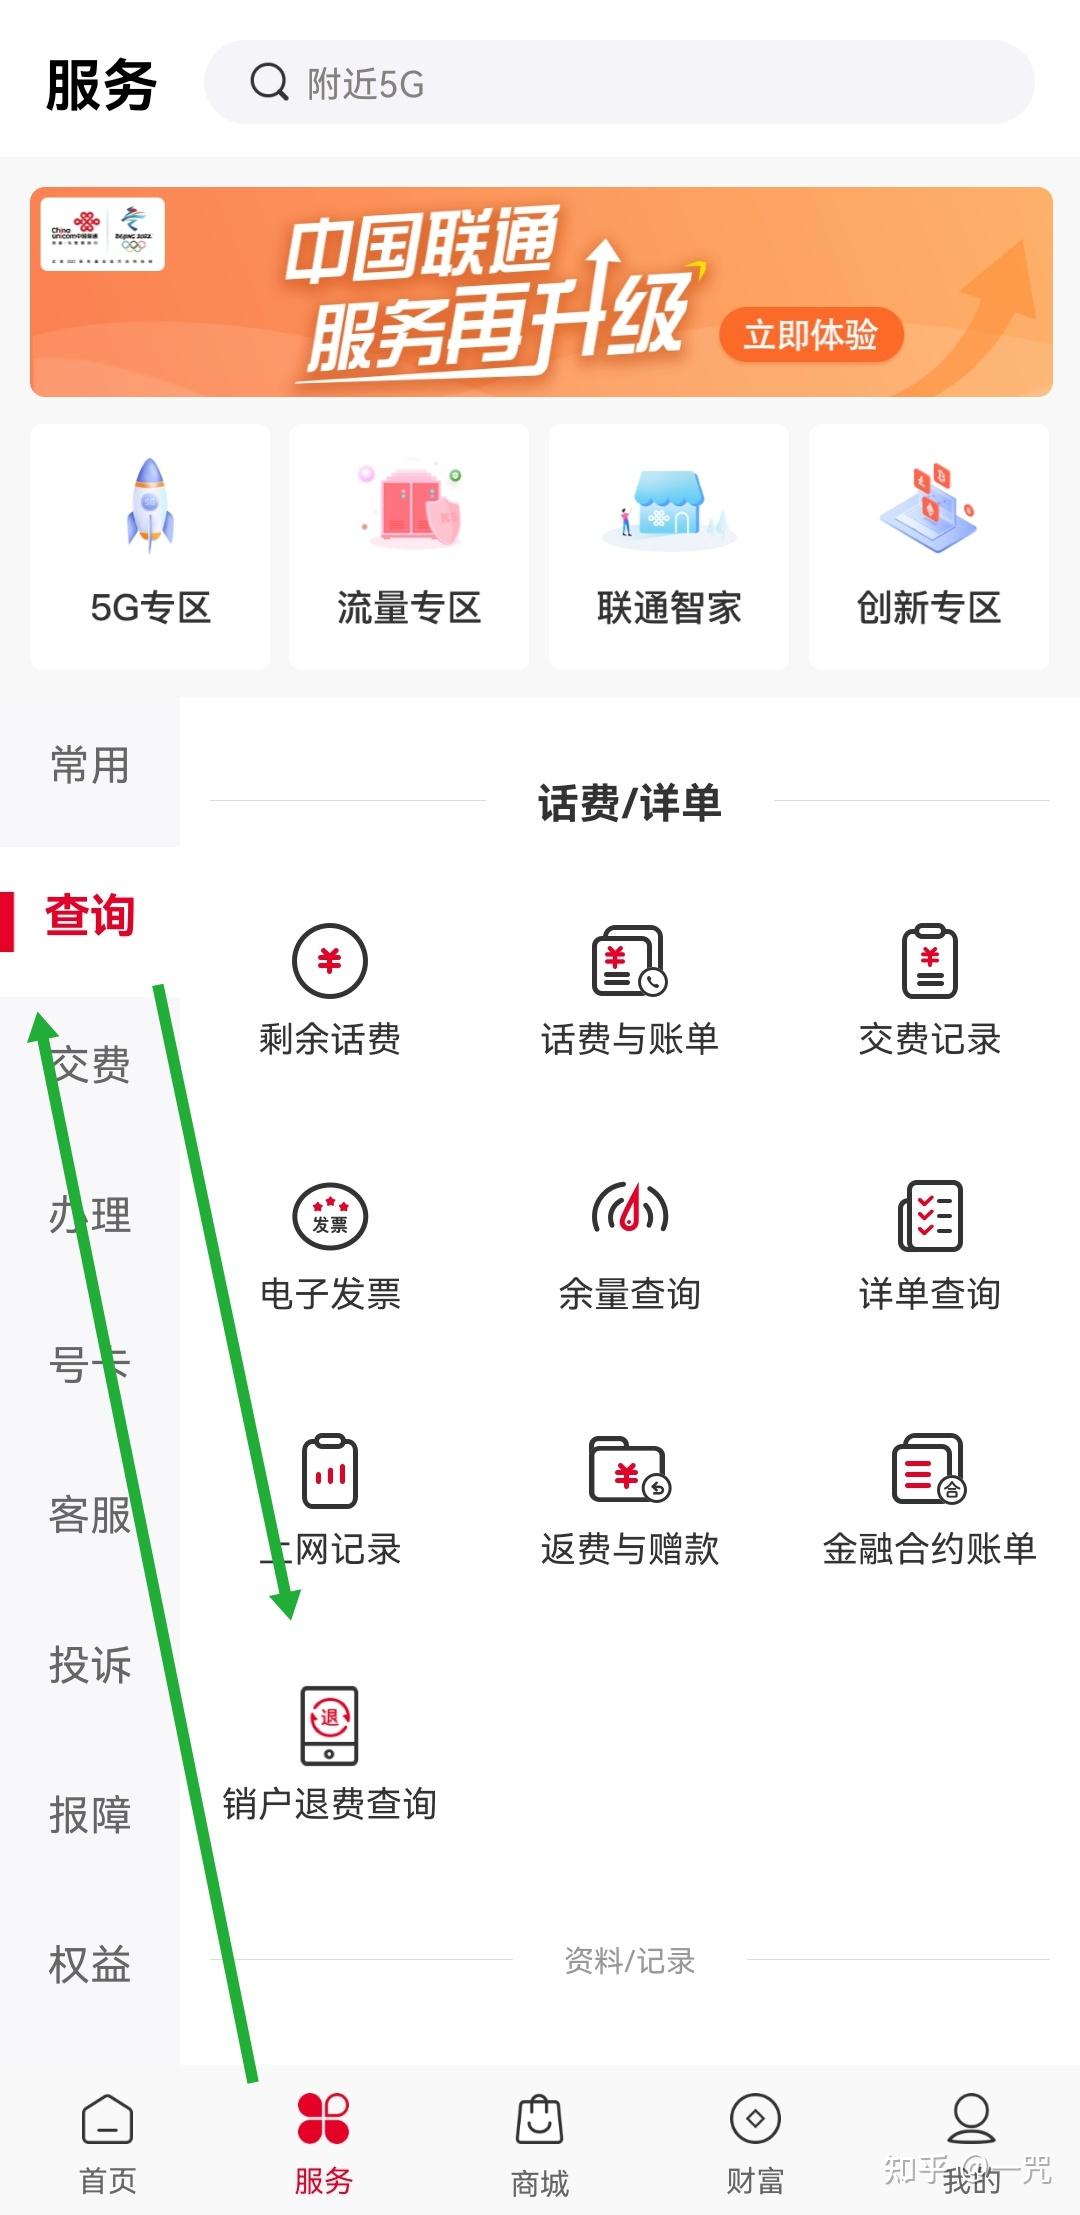 中国联通，为什么手机欠费就停机，但流量超了还让你继续用，也不再提示流量已超，这合理么？ - 知乎